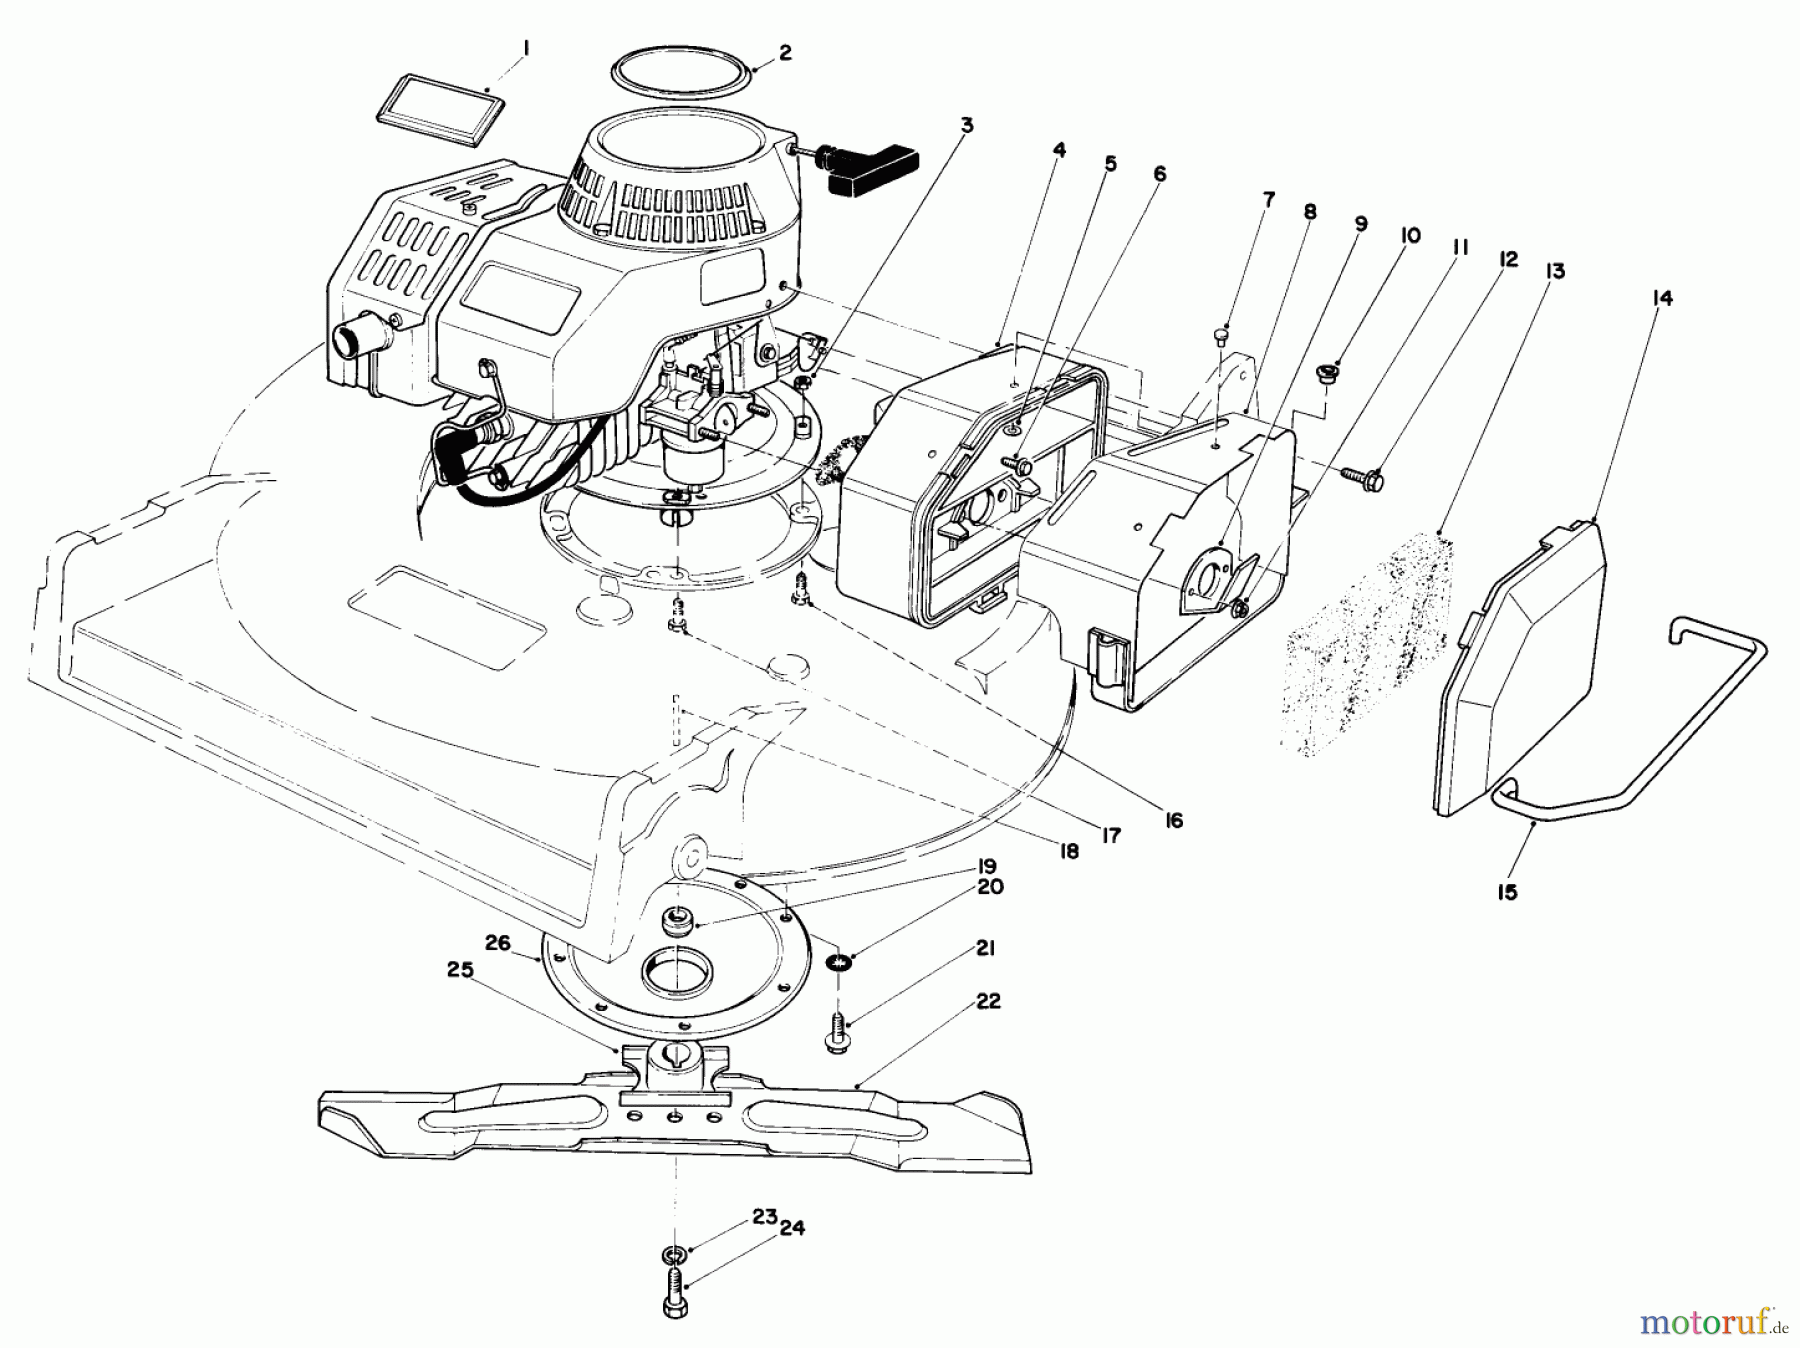  Toro Neu Mowers, Walk-Behind Seite 2 22035 - Toro Lawnmower, 1987 (7000001-7999999) ENGINE ASSEMBLY (MODEL 22030)